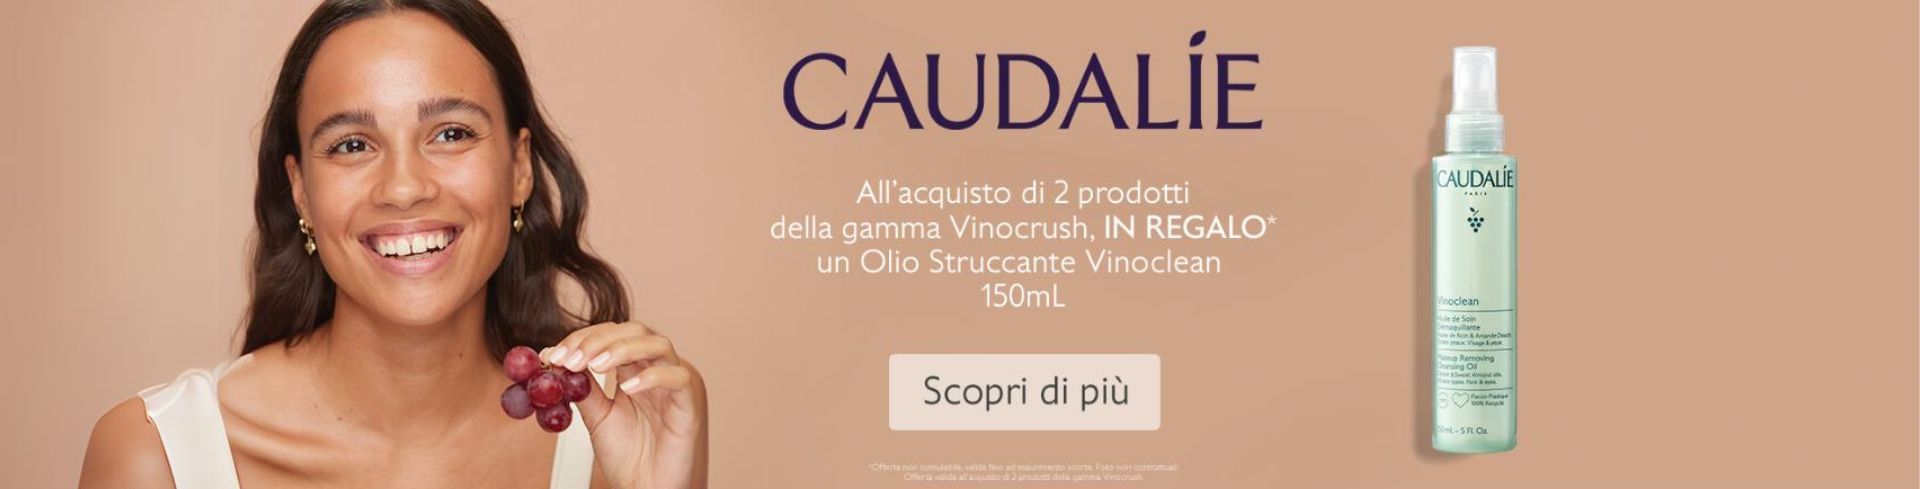 banner promozionale Caudalie Vinocrush: acquista 2 prodotti della gamma e ricevi in regalo un olio struccante vinoclean 150ml!  desktop